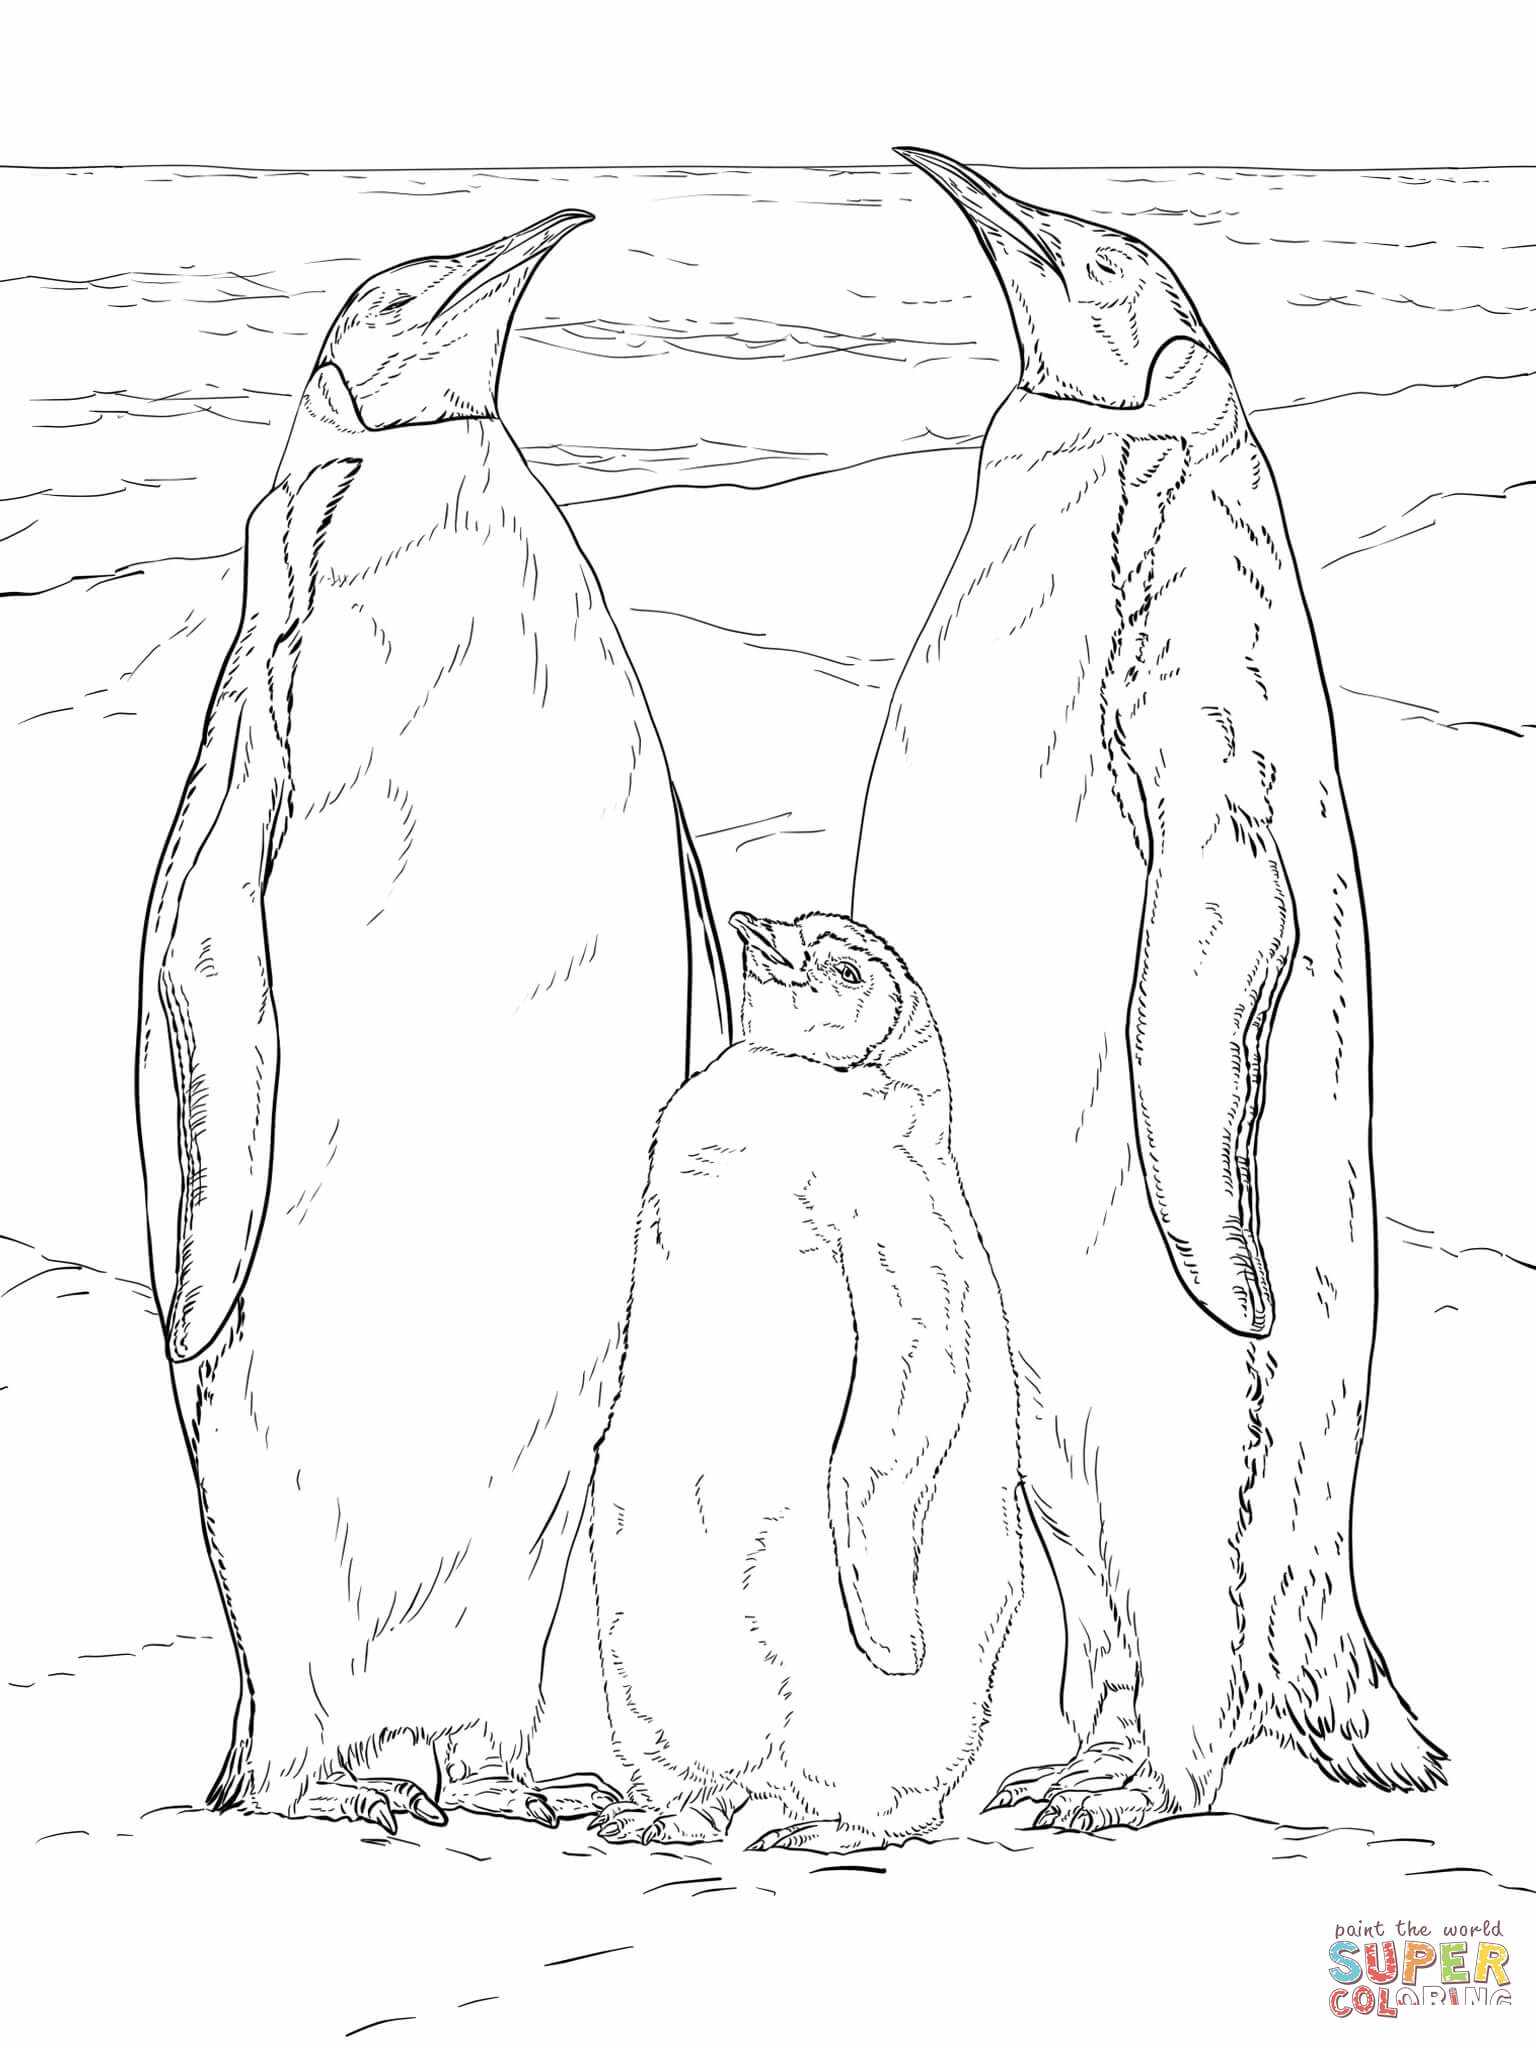 Rodzina pingwinów cesarskich